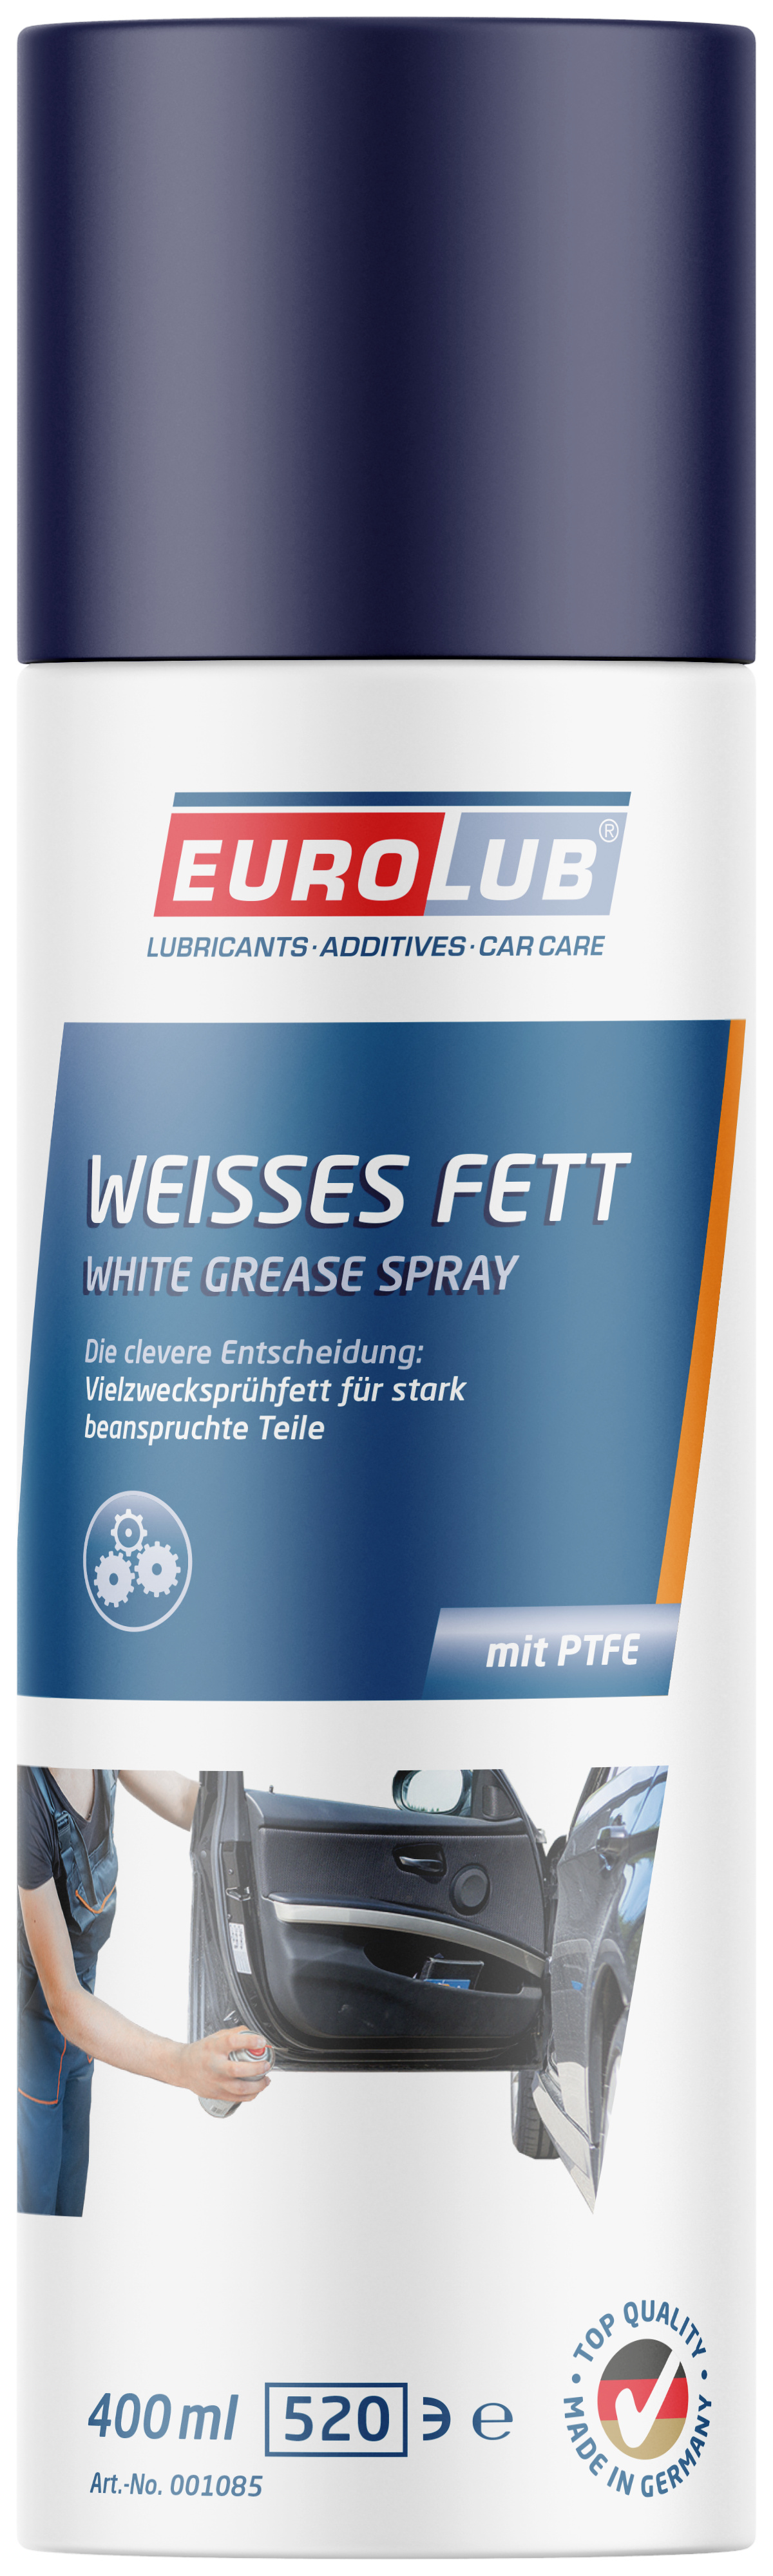 WEISSES FETT MIT PTFE - 400 ml